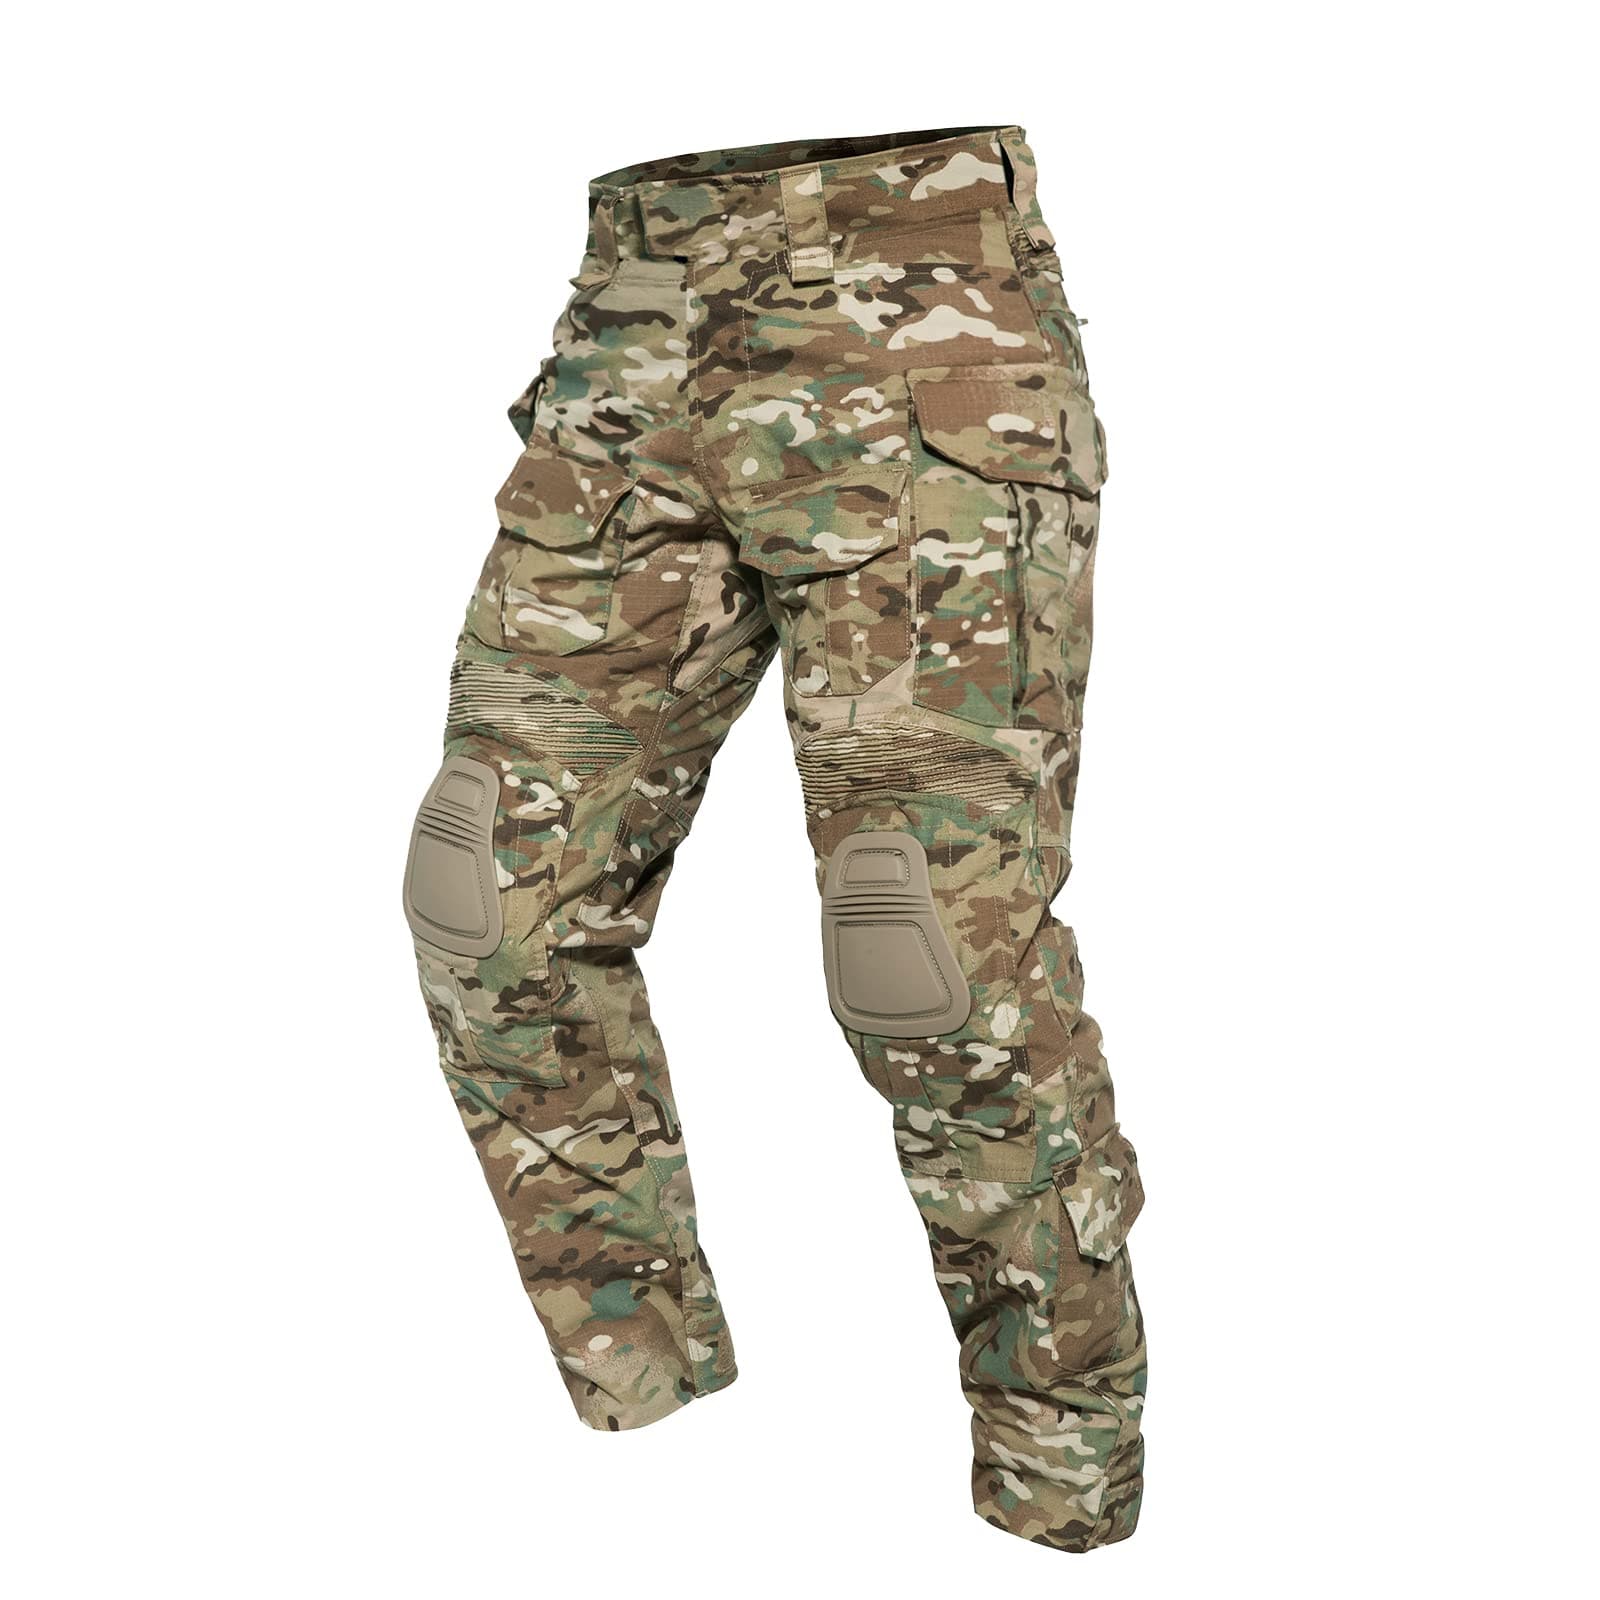 G3 Tactical Combat Pants Camo With Knee Pads | ANTARCTICA Outdoors